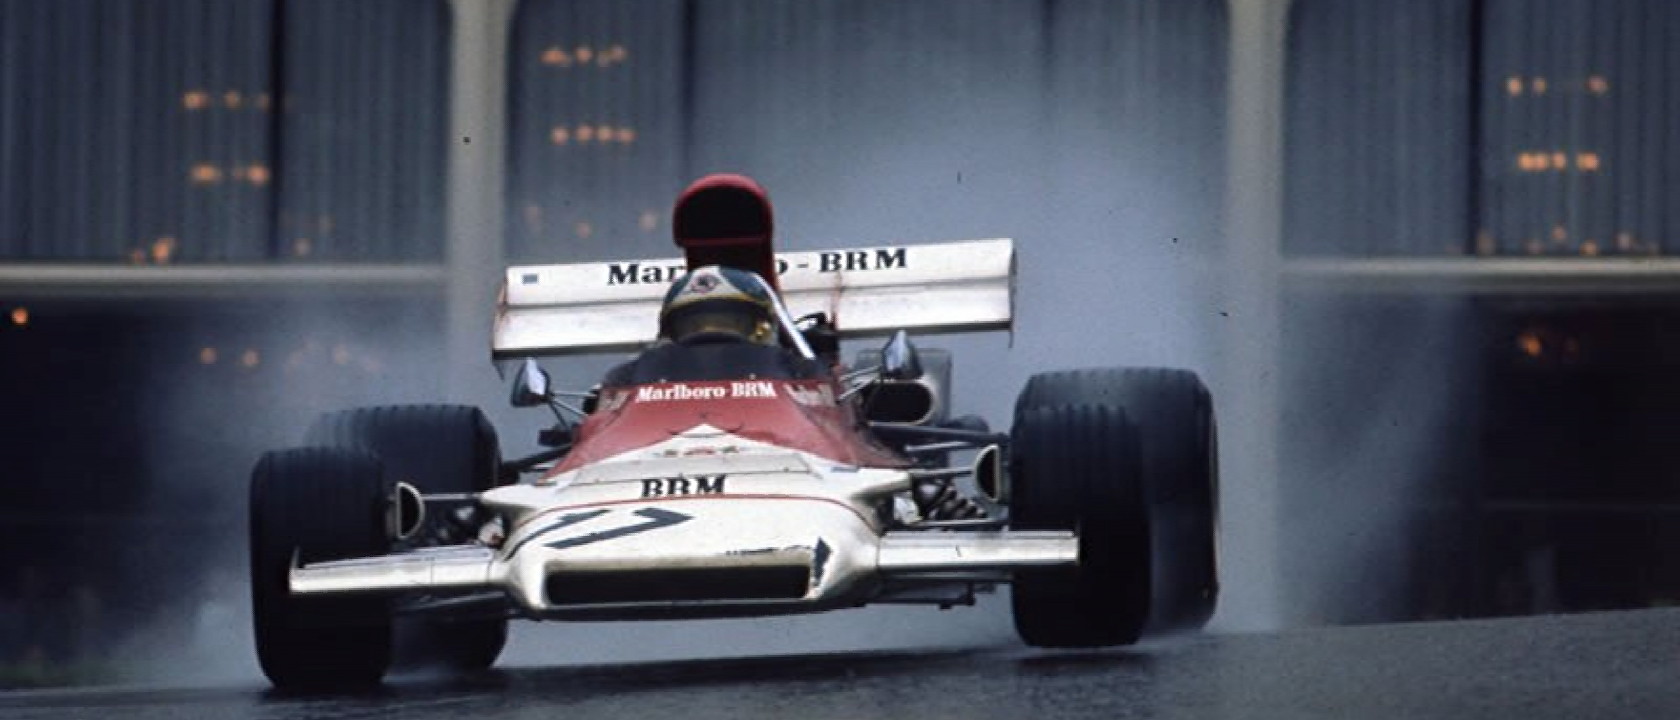 DECALS BRM P160B Jean-Pierre Beltoise 1972 Monaco 1:43 Formula 1 Car Collection 